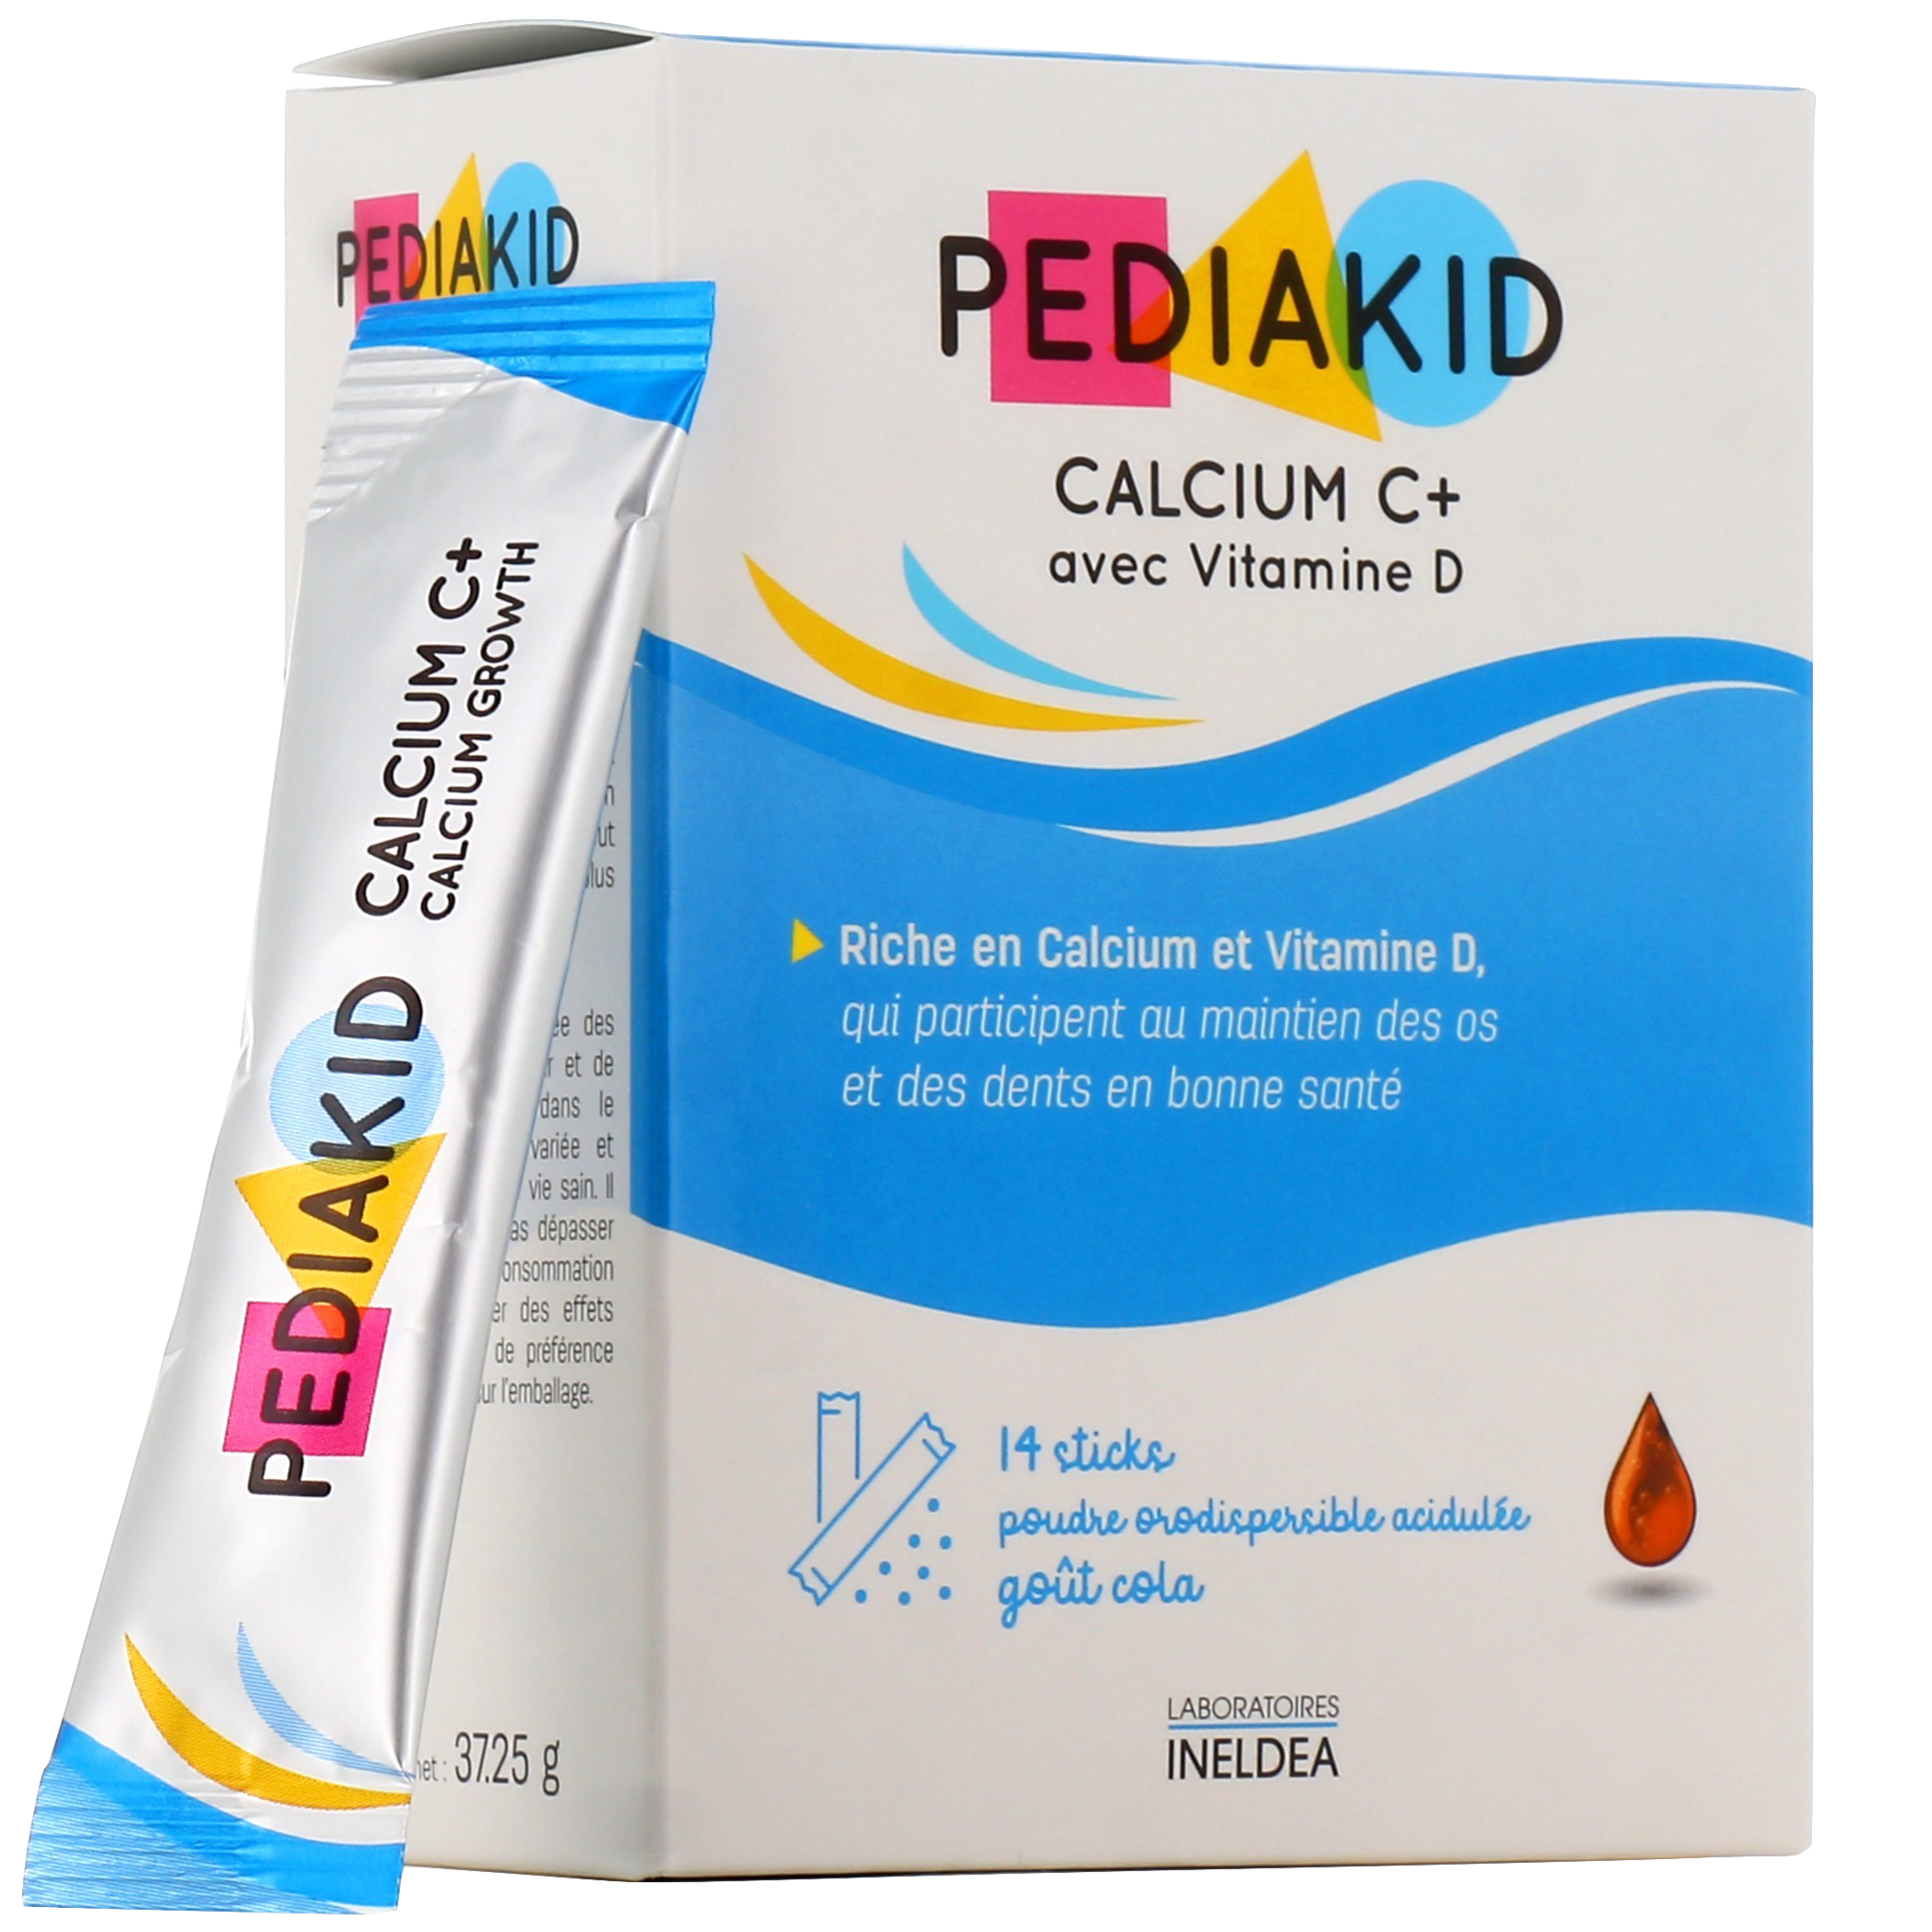 PEDIAKID® CALCIUM C+ - Maintien du Capital osseux - Etui de 14